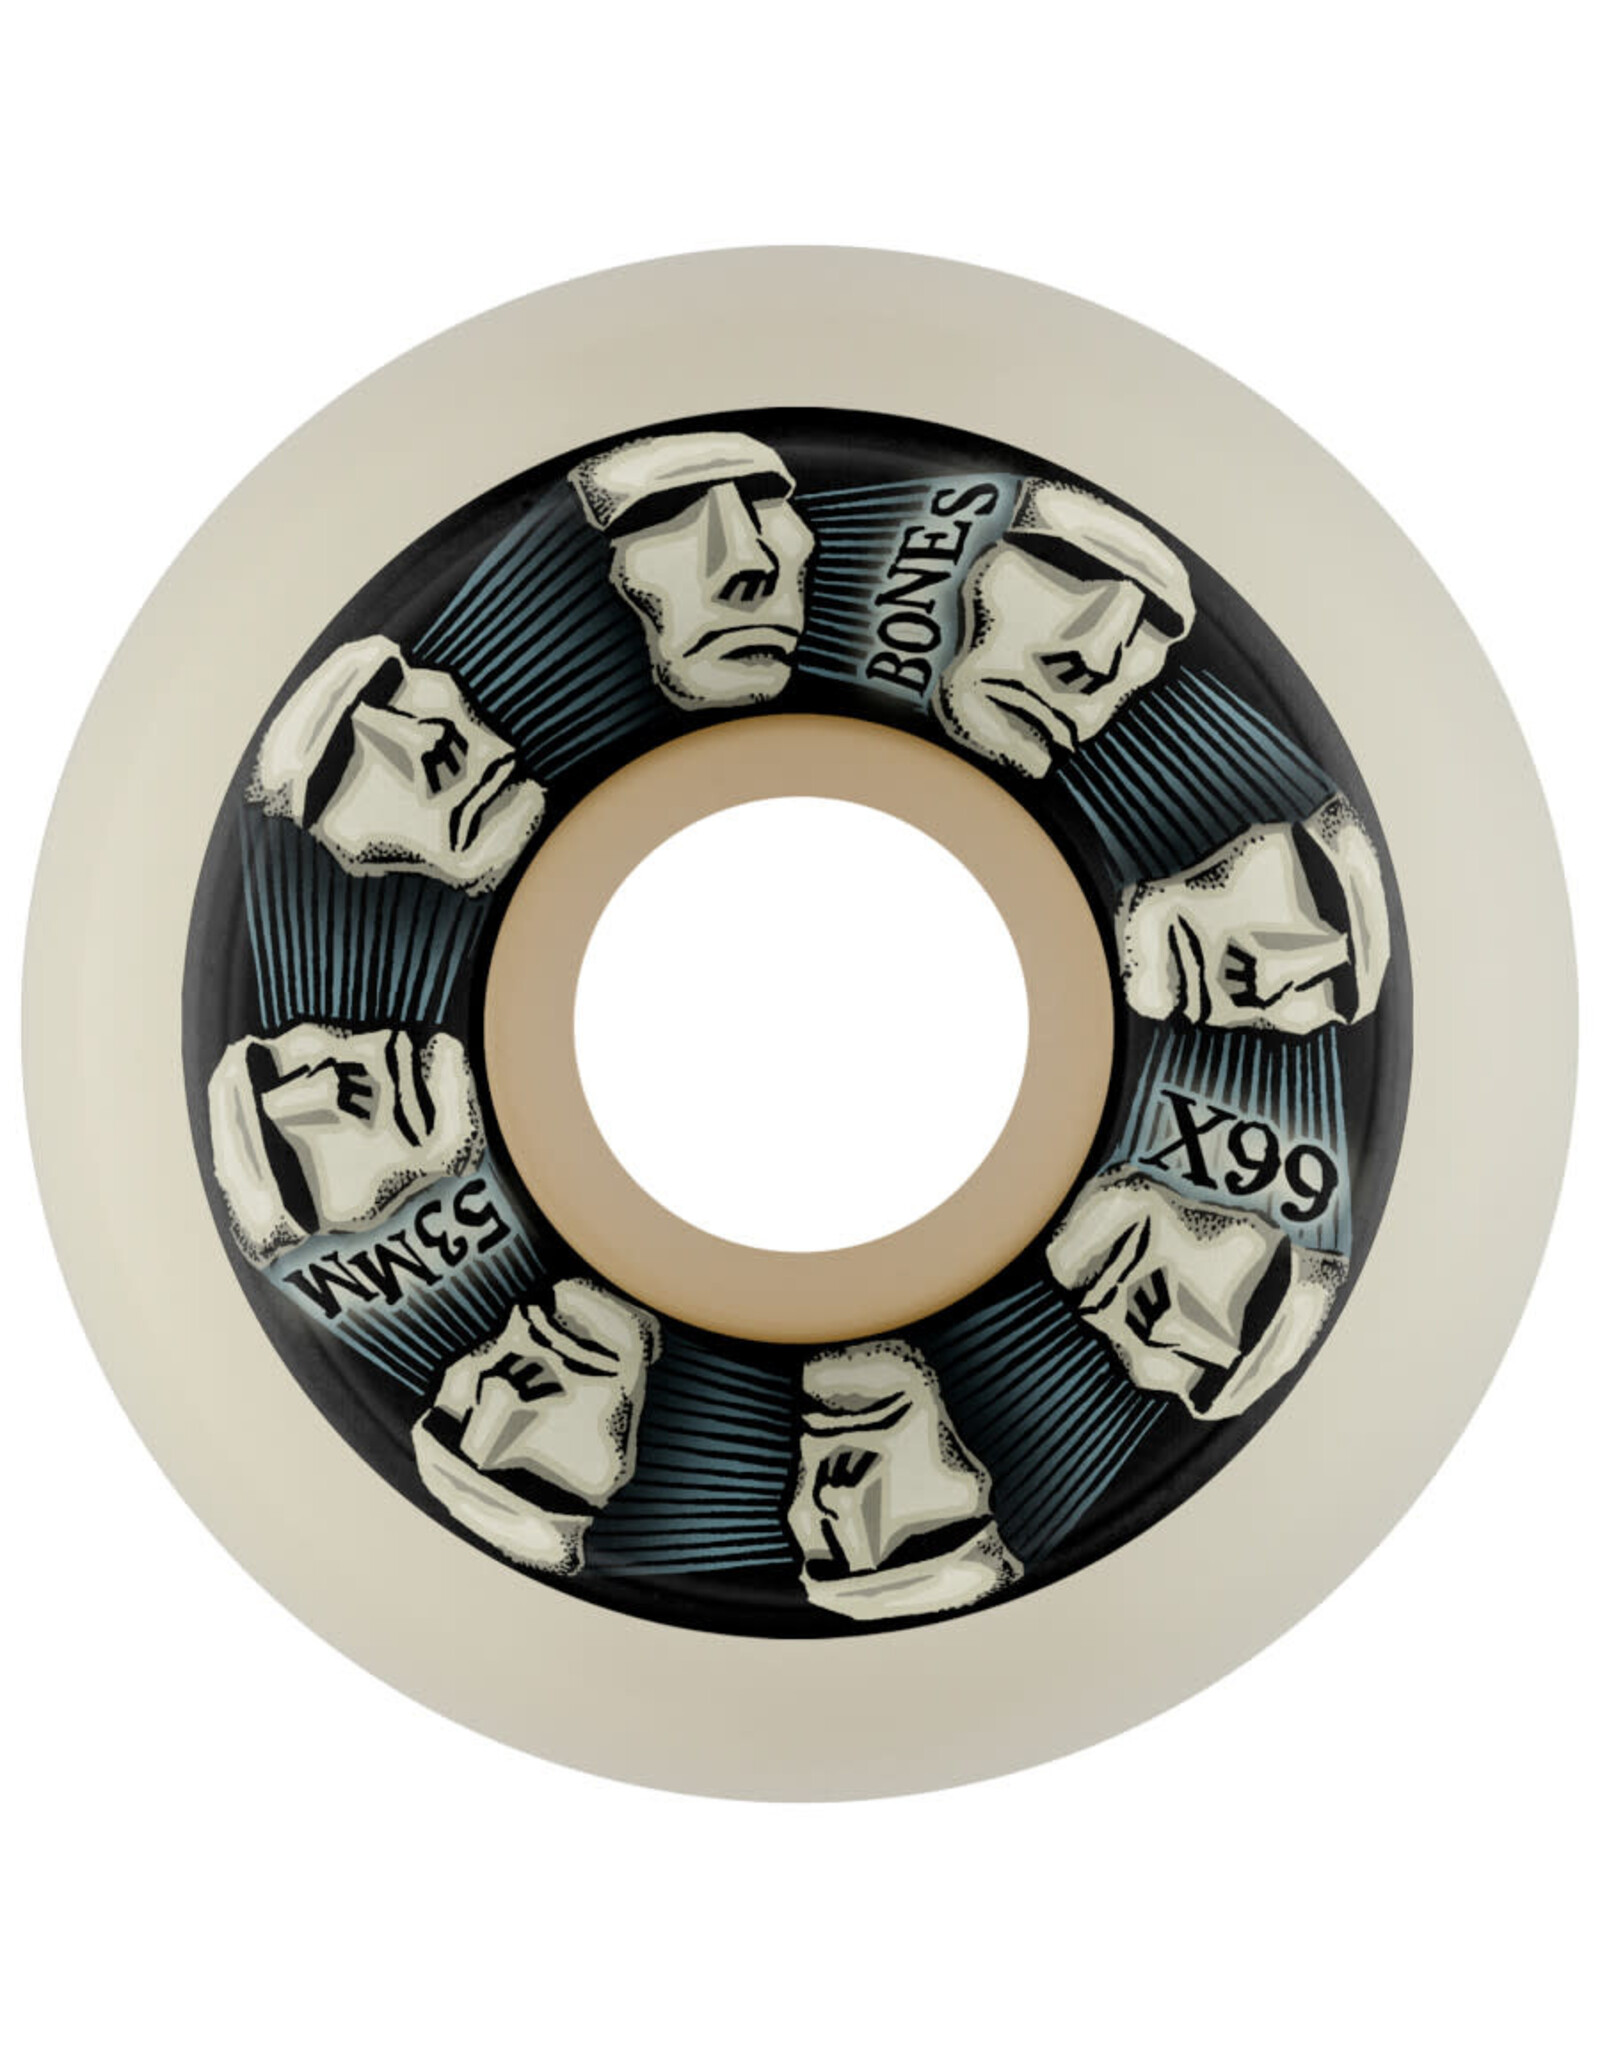 Bones Bones Wheels X99 Head Rush V5 Sidecut White (54mm/99a)